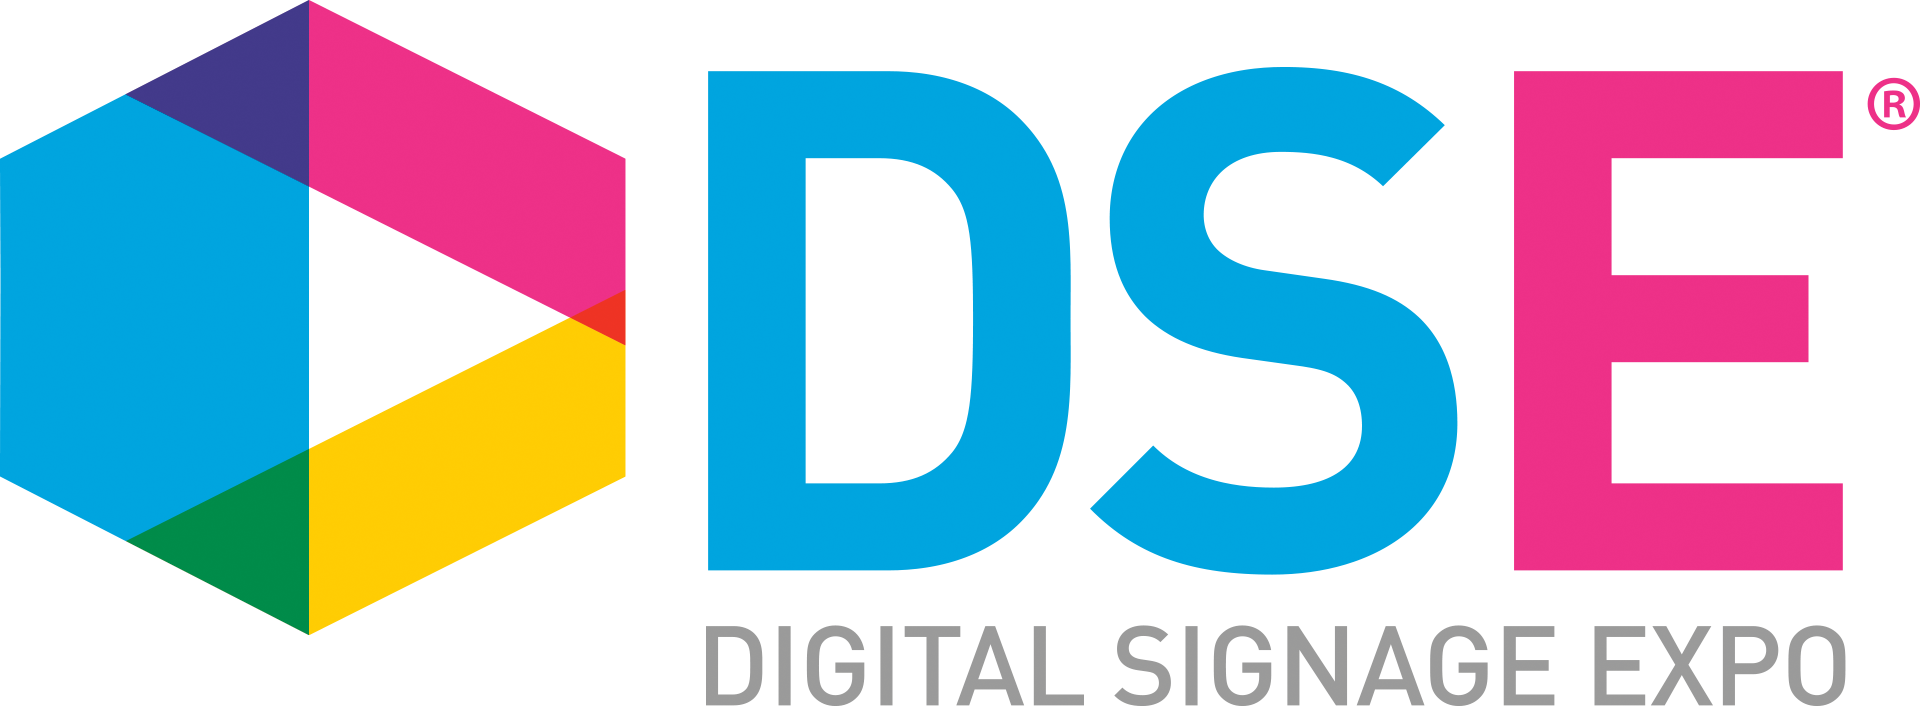 DSE_logo